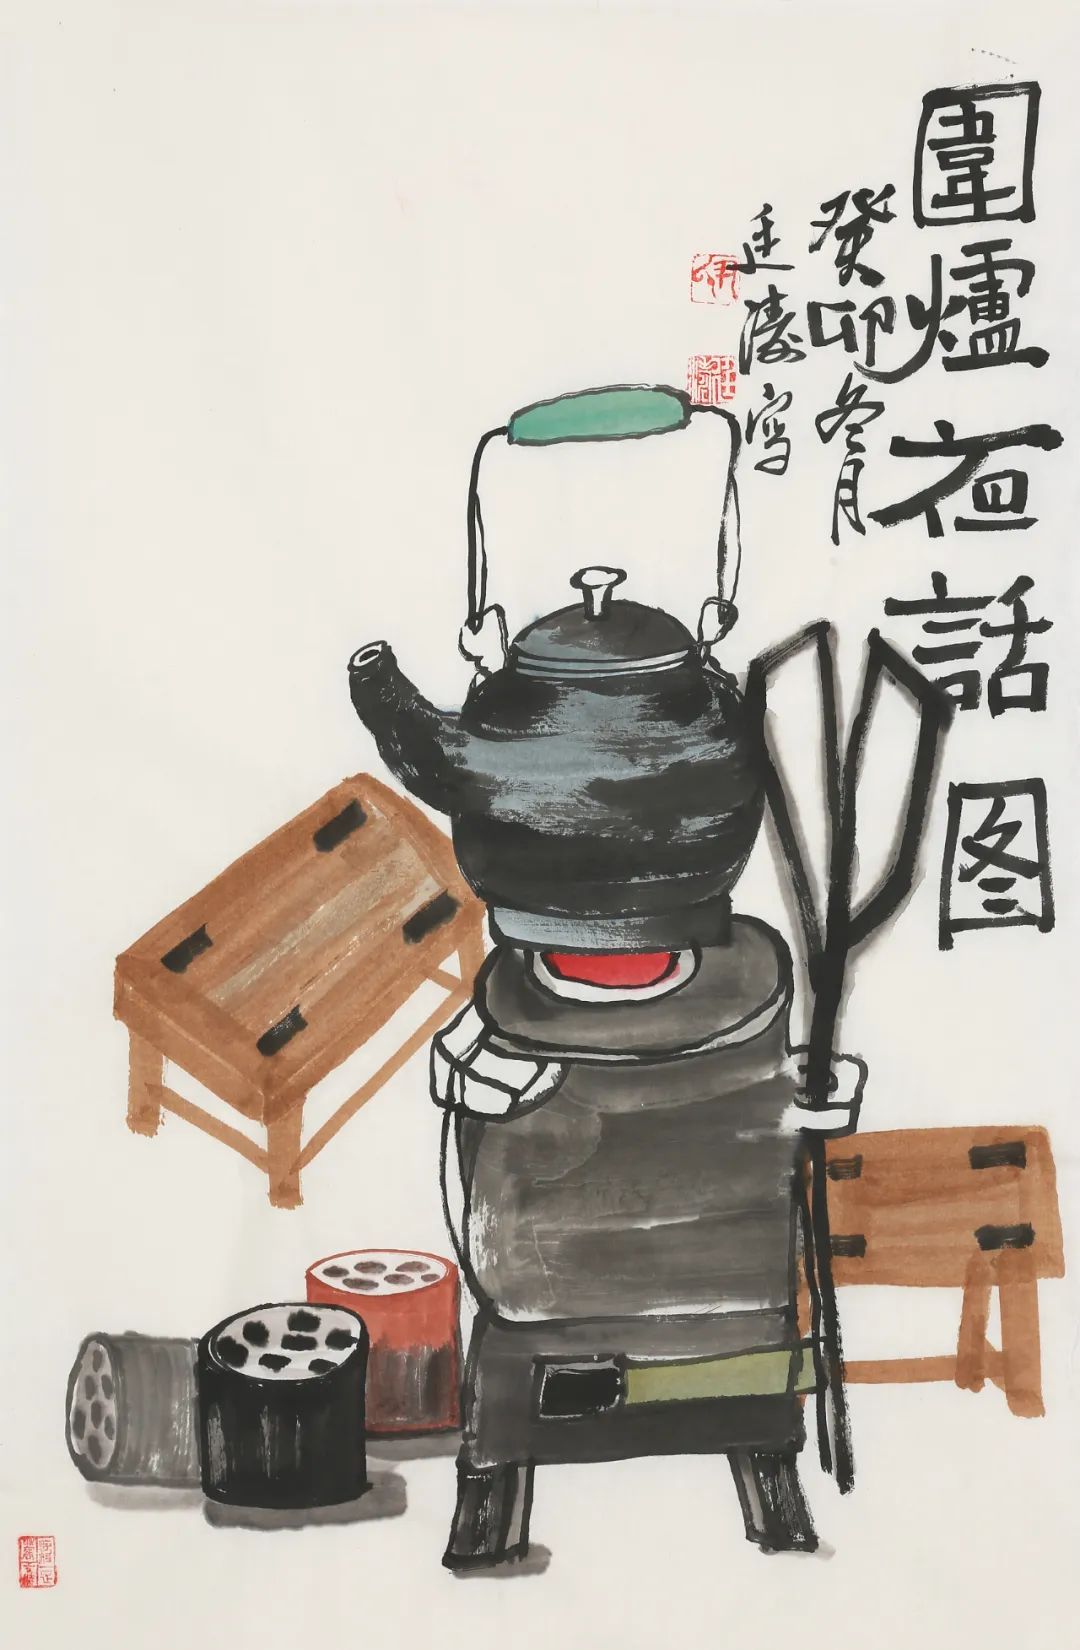 尹廷涛丨“农”字是我的本名，熟悉的生活体验才能激发创作灵感